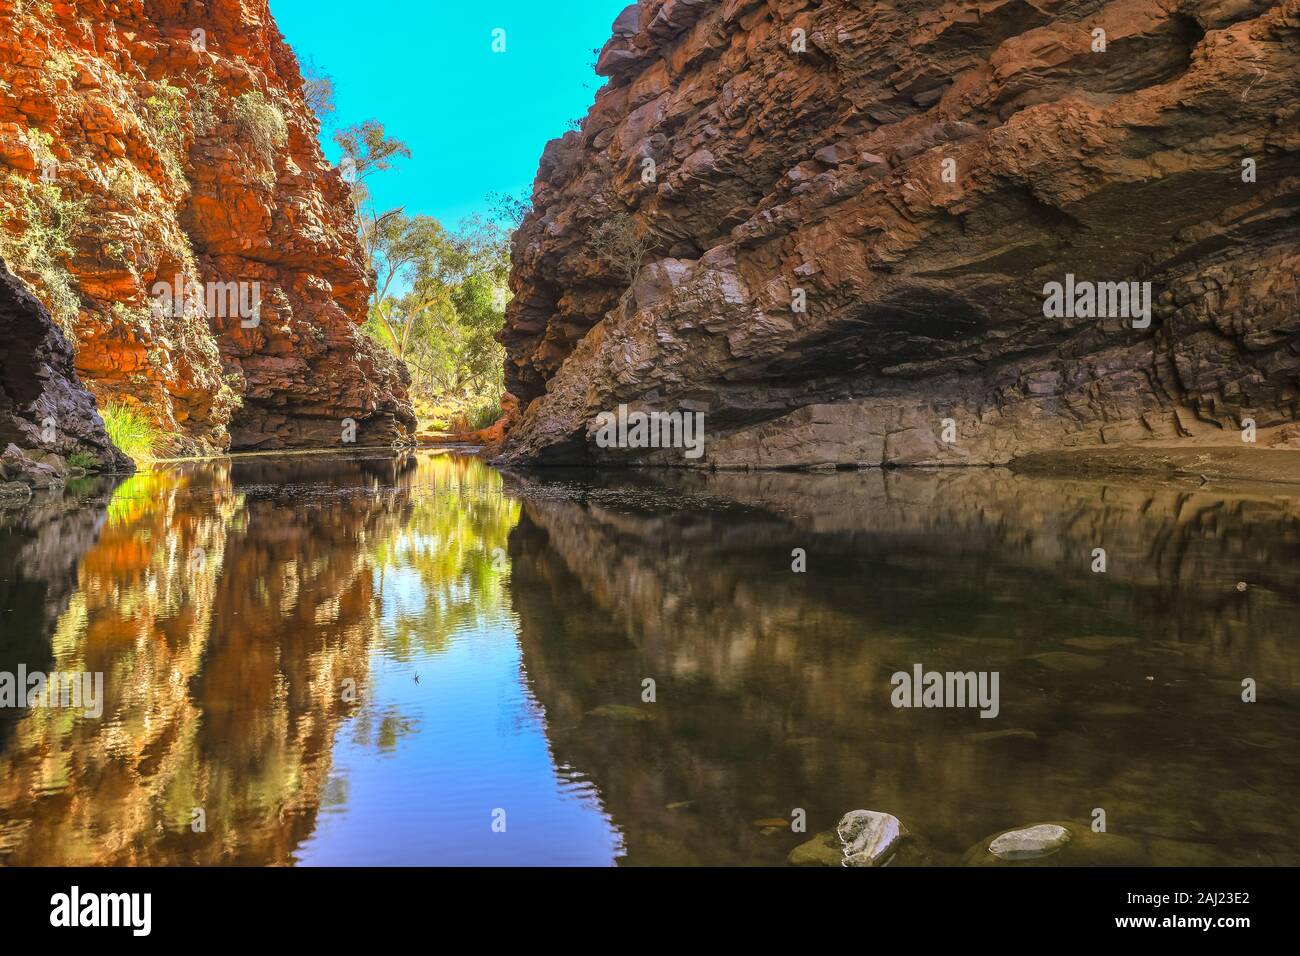 Scenic Simpsons Gap et point d'eau permanent reflétant les falaises dans West MacDonnell Ranges, près d'Alice Springs sur Larapinta Trail, Outback, l'Australie Banque D'Images